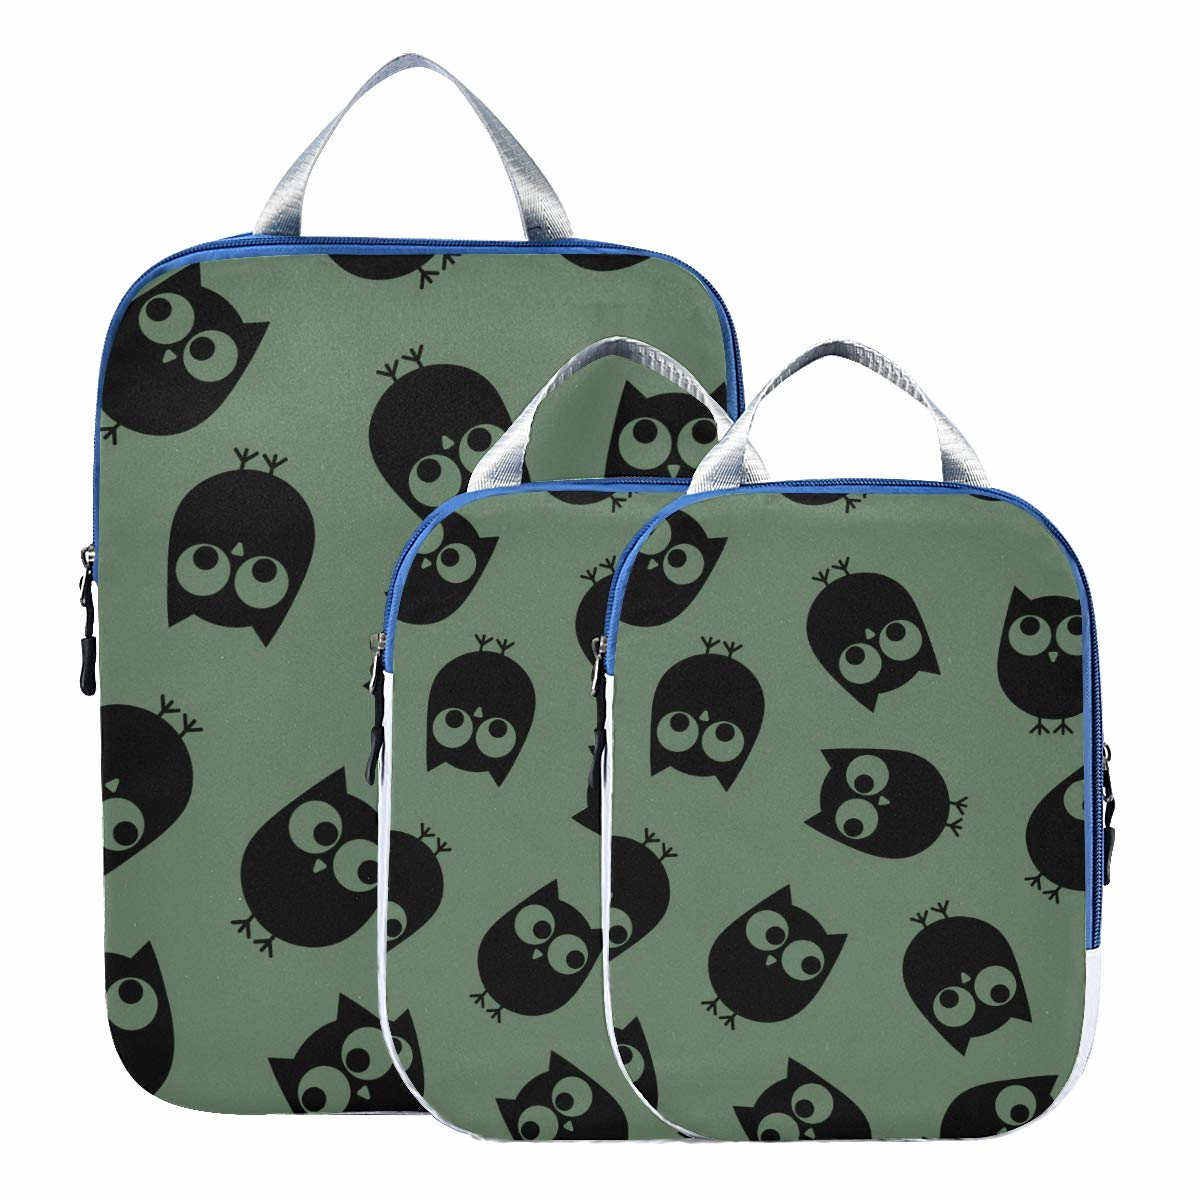 3 Pcs Set Suitcase Organizer Bag Product Details